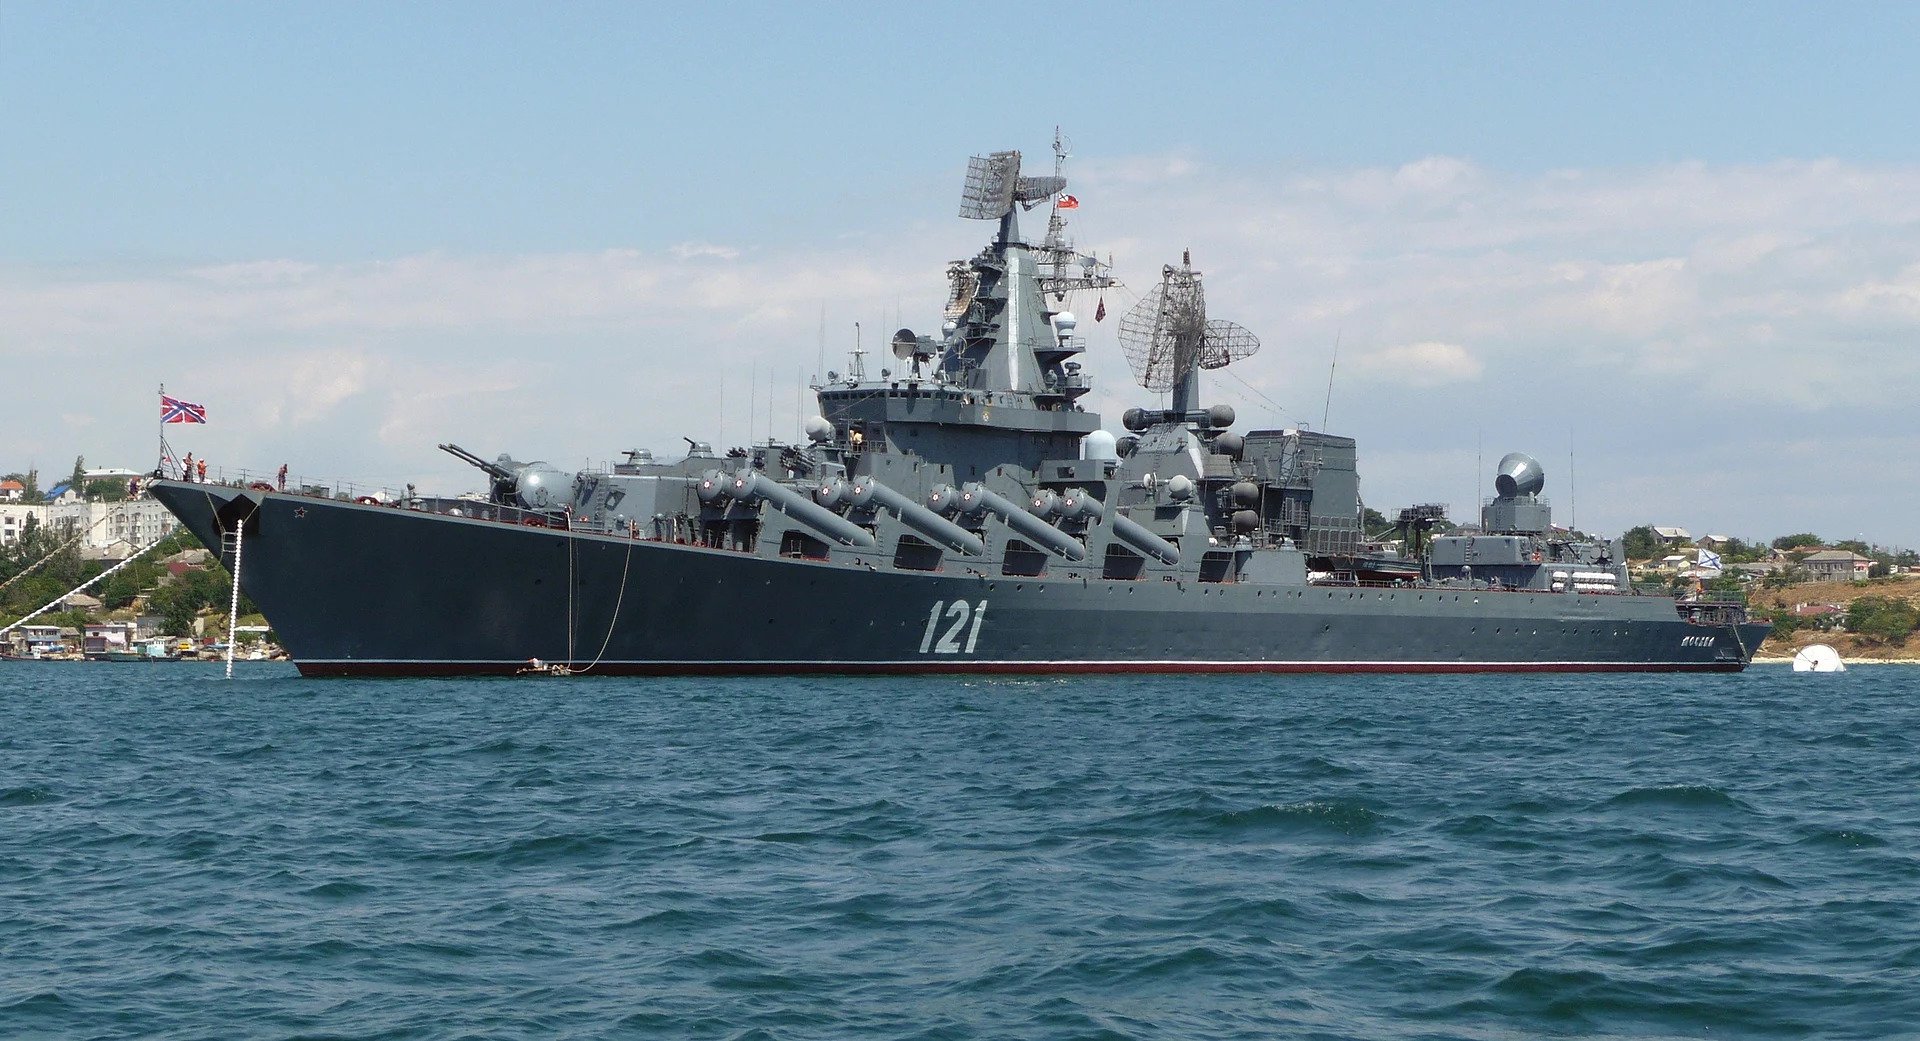 بعد الهجمات الاوكرانية غرق الطراد موسكفا الروسي في البحر الأسود